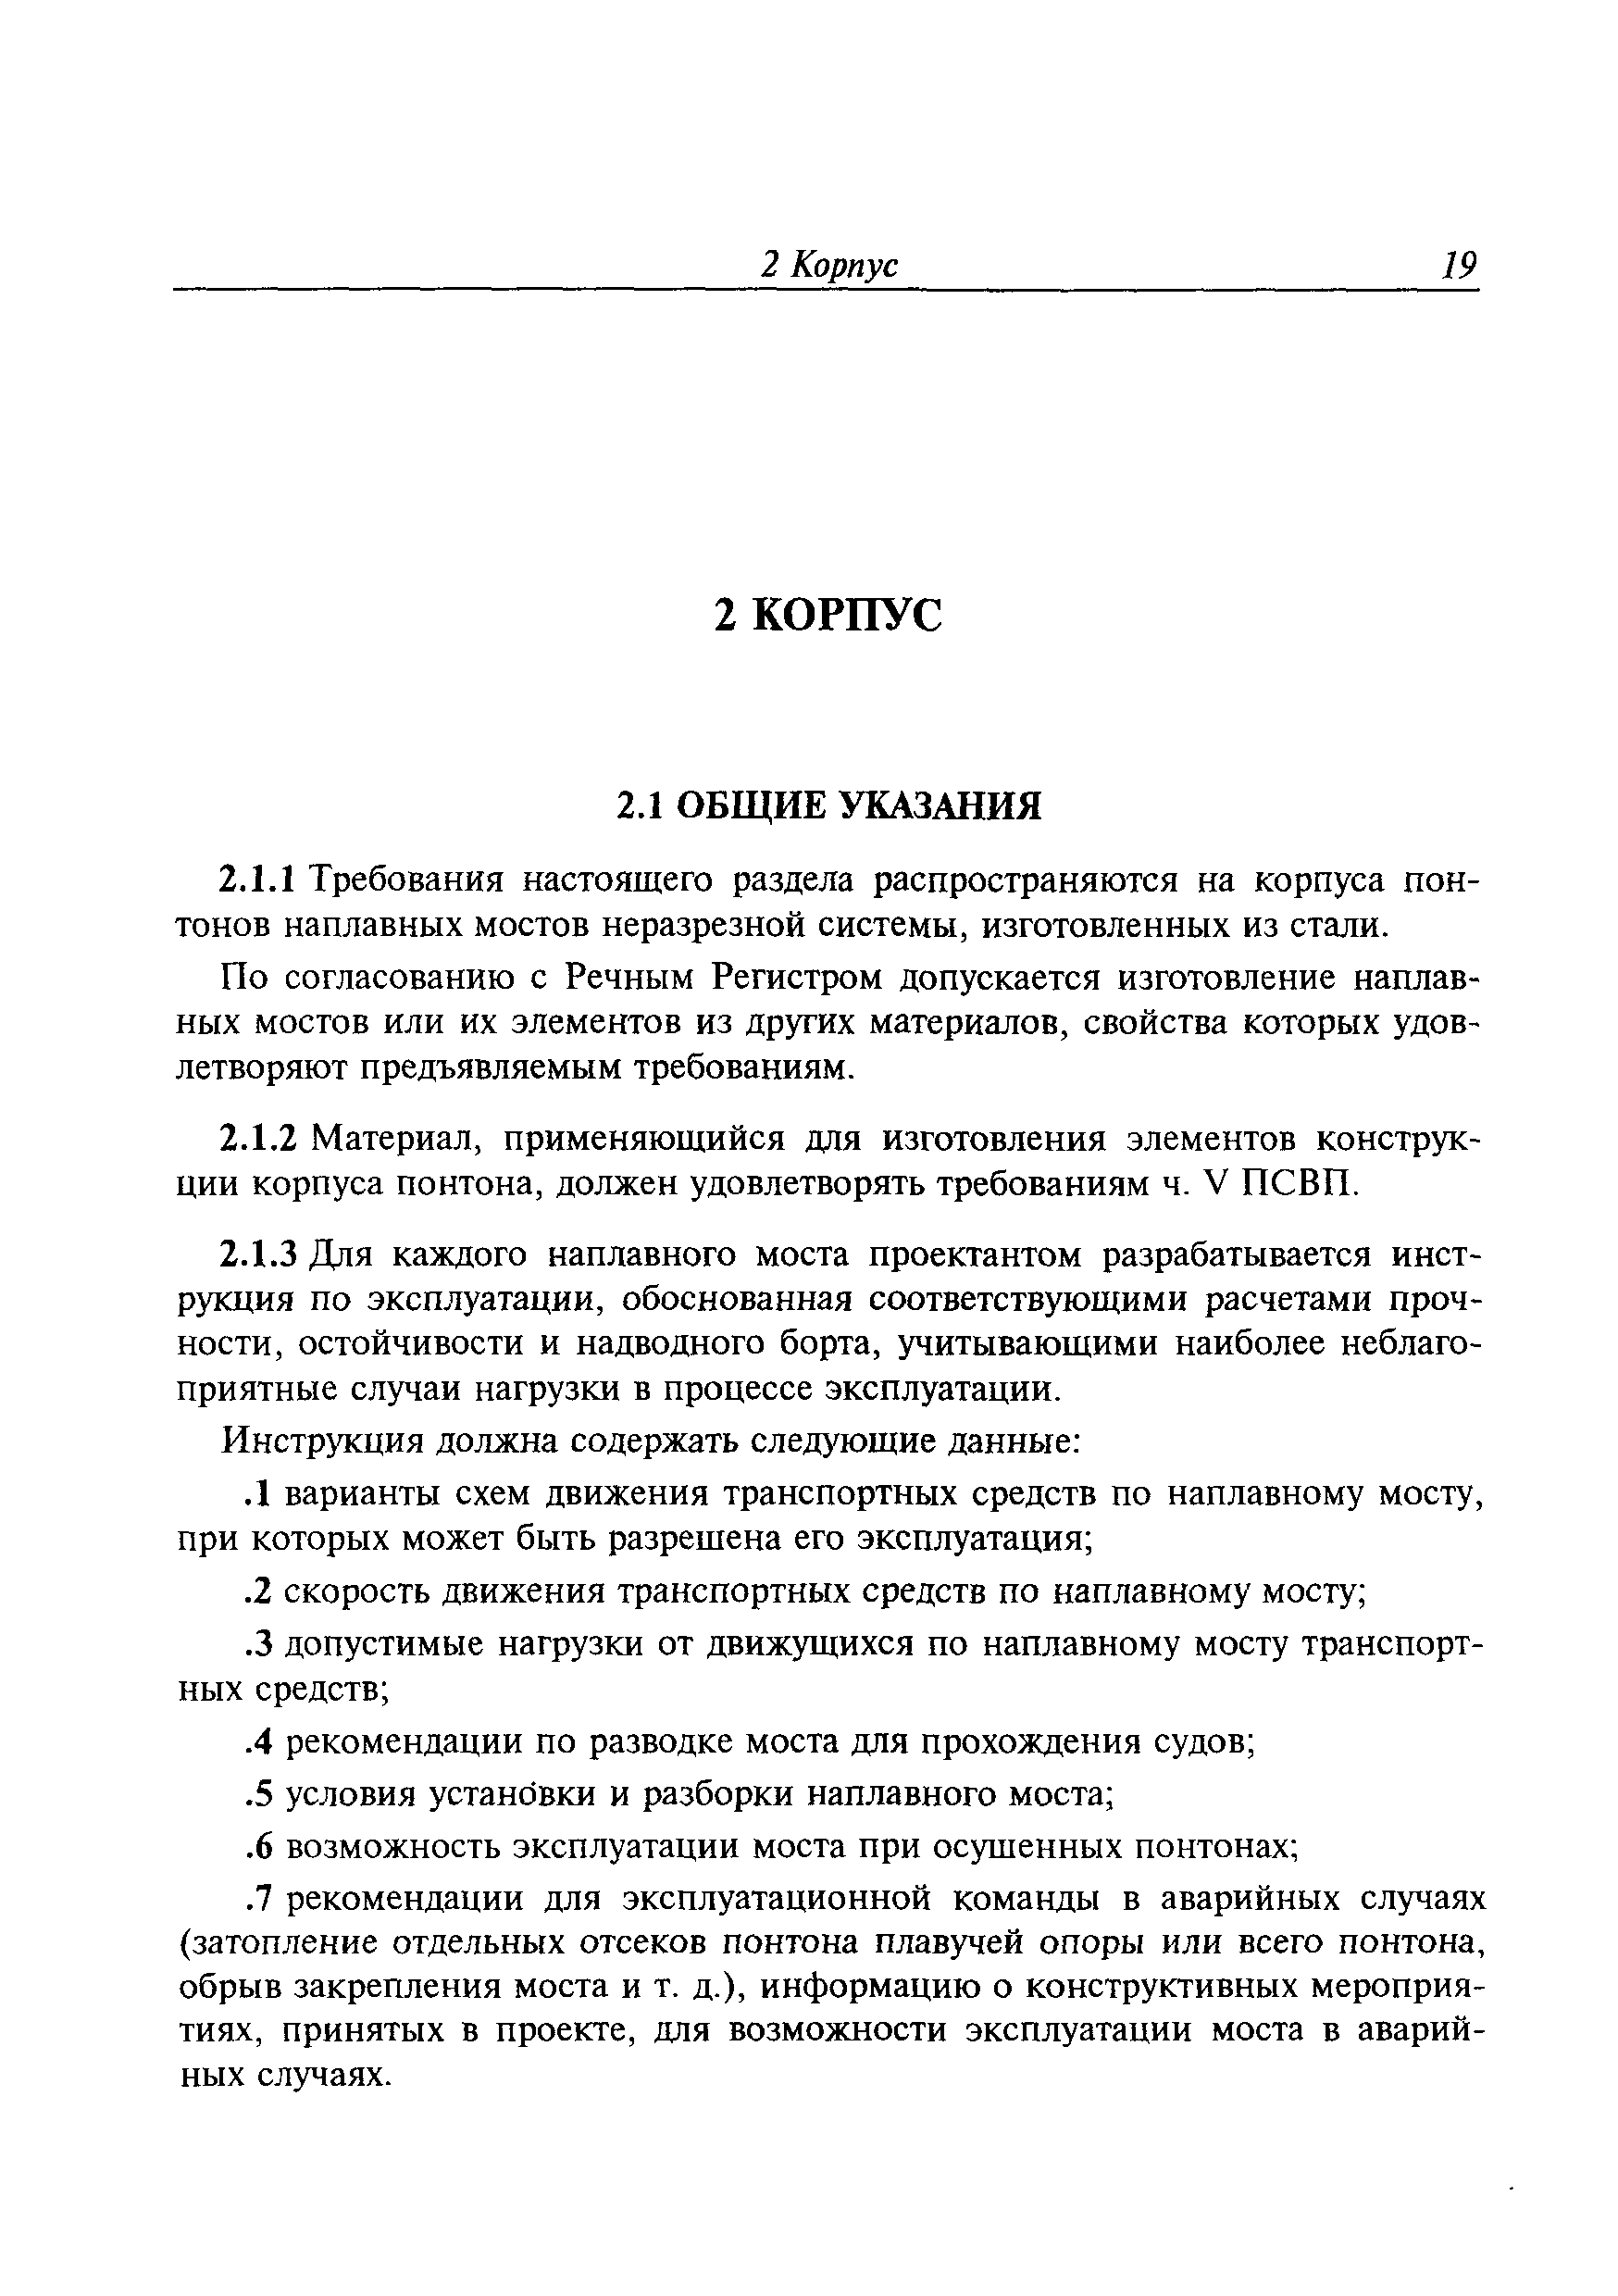 Временное руководство Р.011-2004